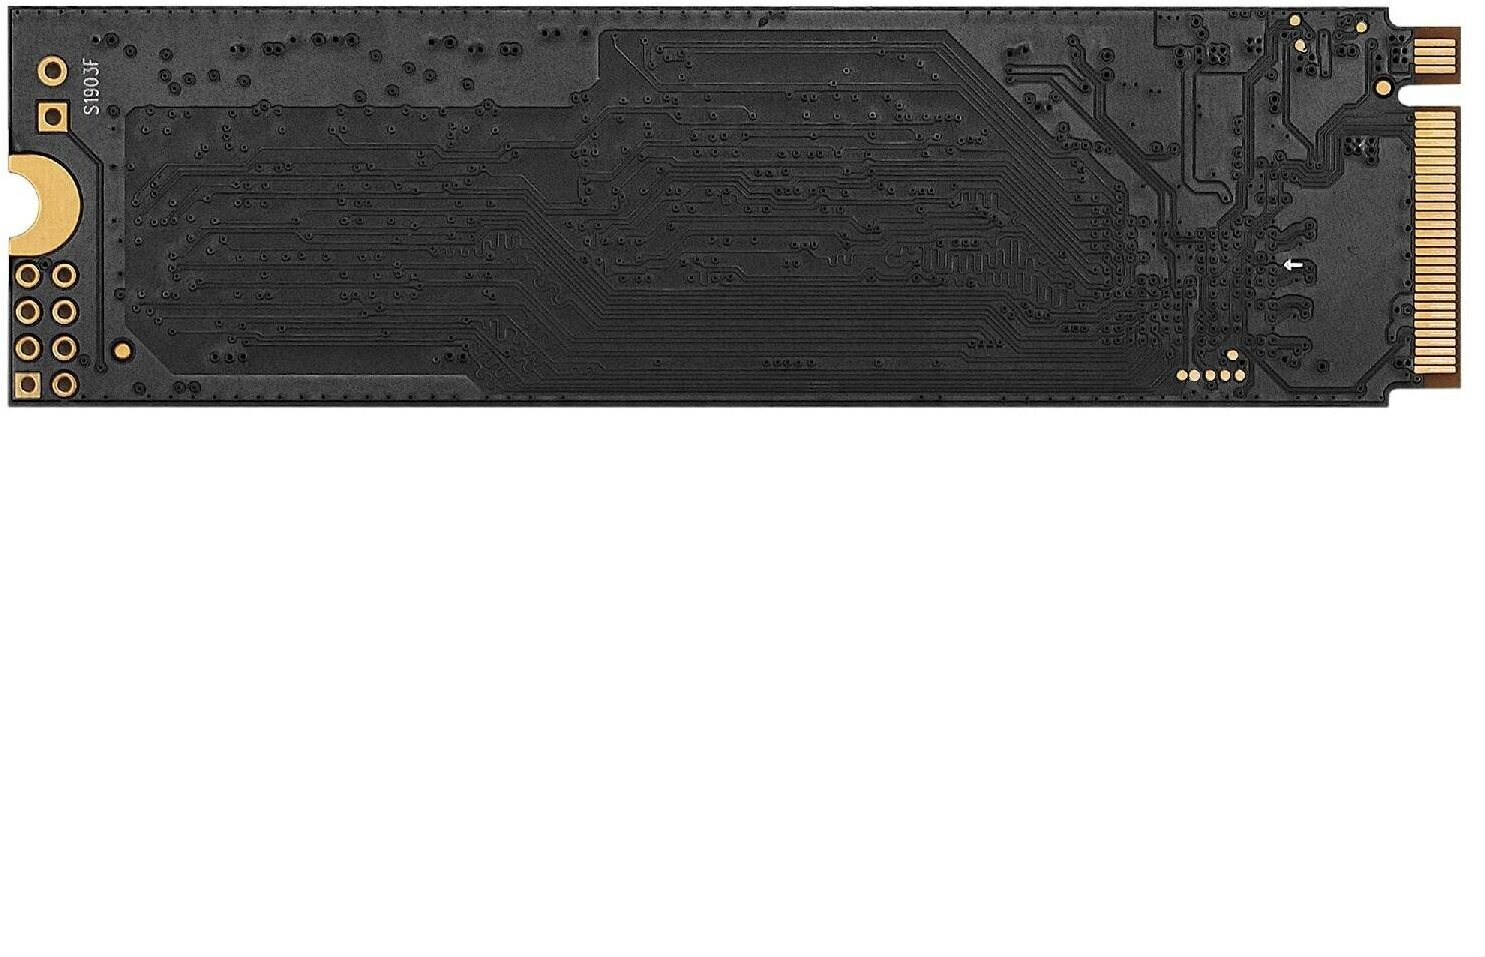 Твердотельный накопитель ExeGate NextPro+ 256 ГБ KC2000TP256 (EX282321RUS)